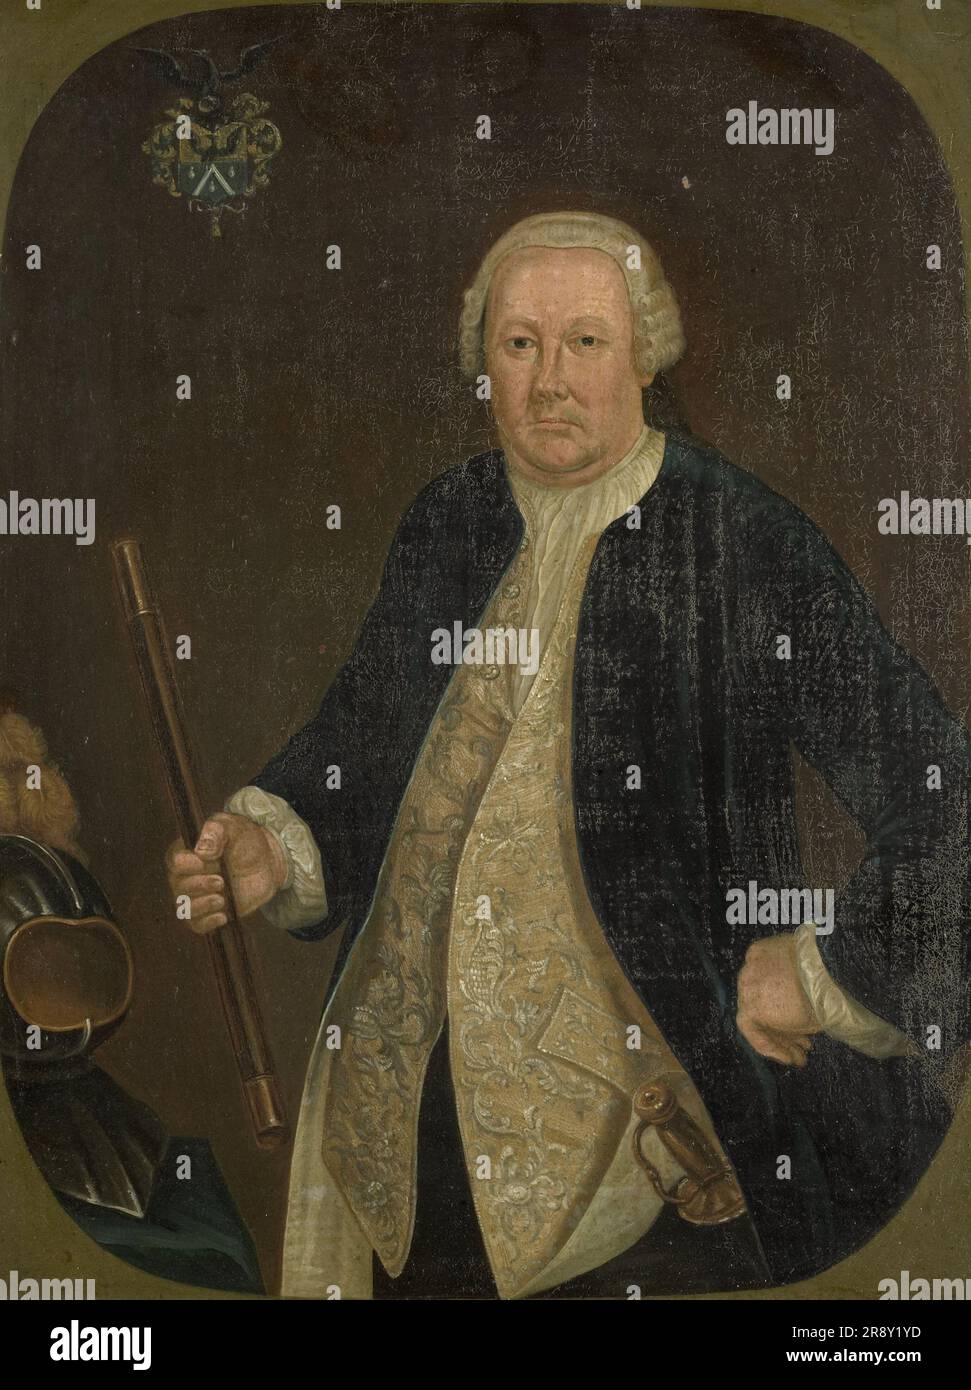 Portrait de Petrus Albertus van der Parra, gouverneur général de la Dutch East India Company, 1762-1800. Banque D'Images